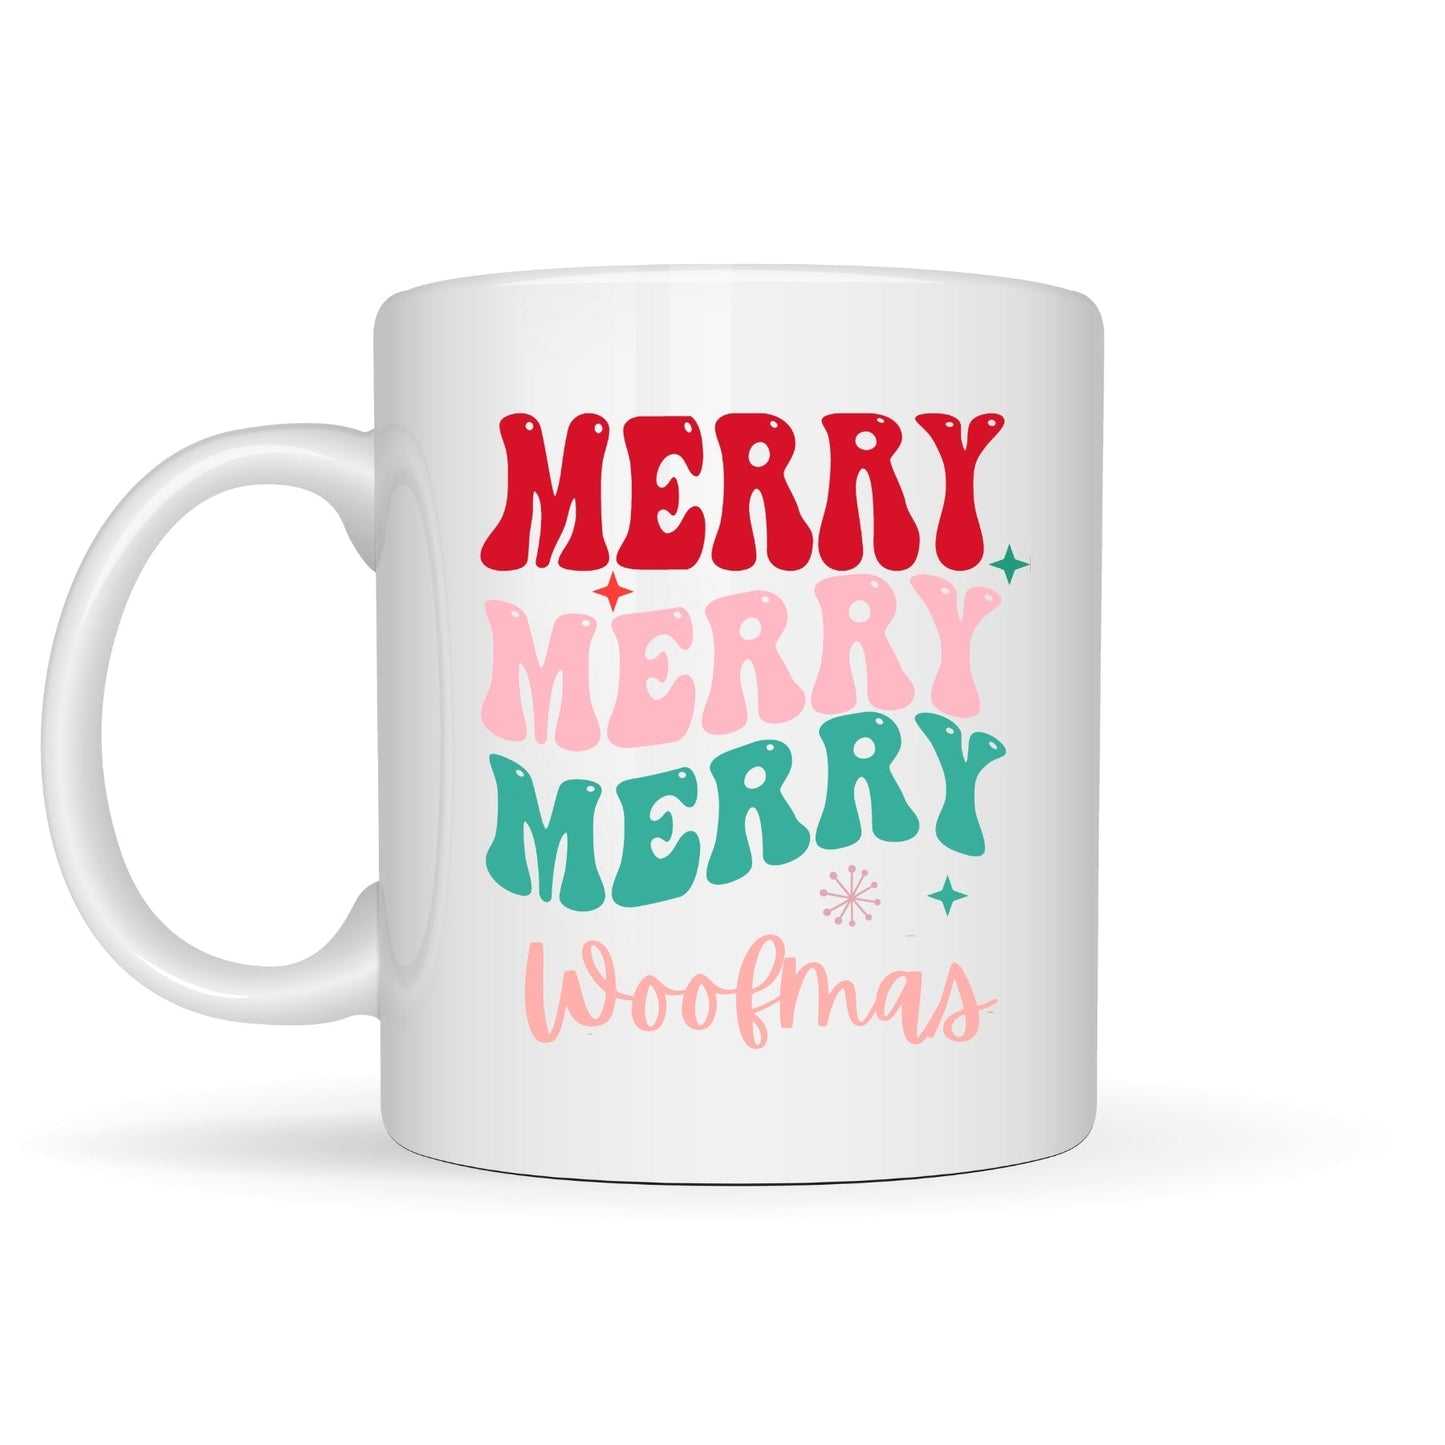 Merry, Merry, Merry Woofmas Mug - Pooch Luxury